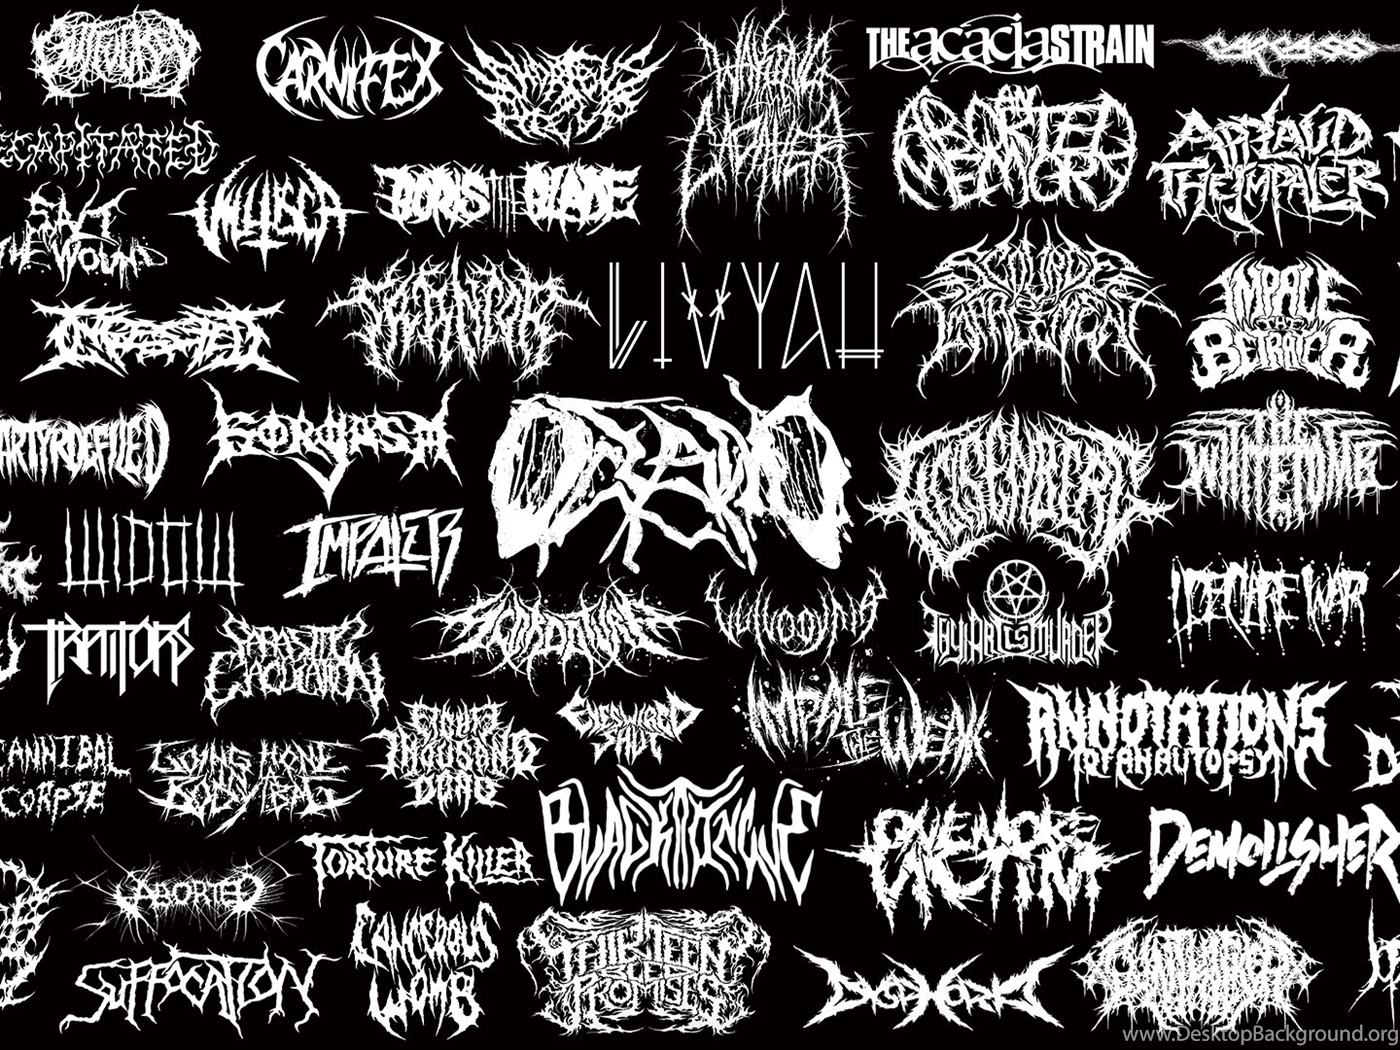 Шрифт металл групп. Название дэткор группы. Лого дэткор групп. Названия Deathcore групп. Надписи металл групп.